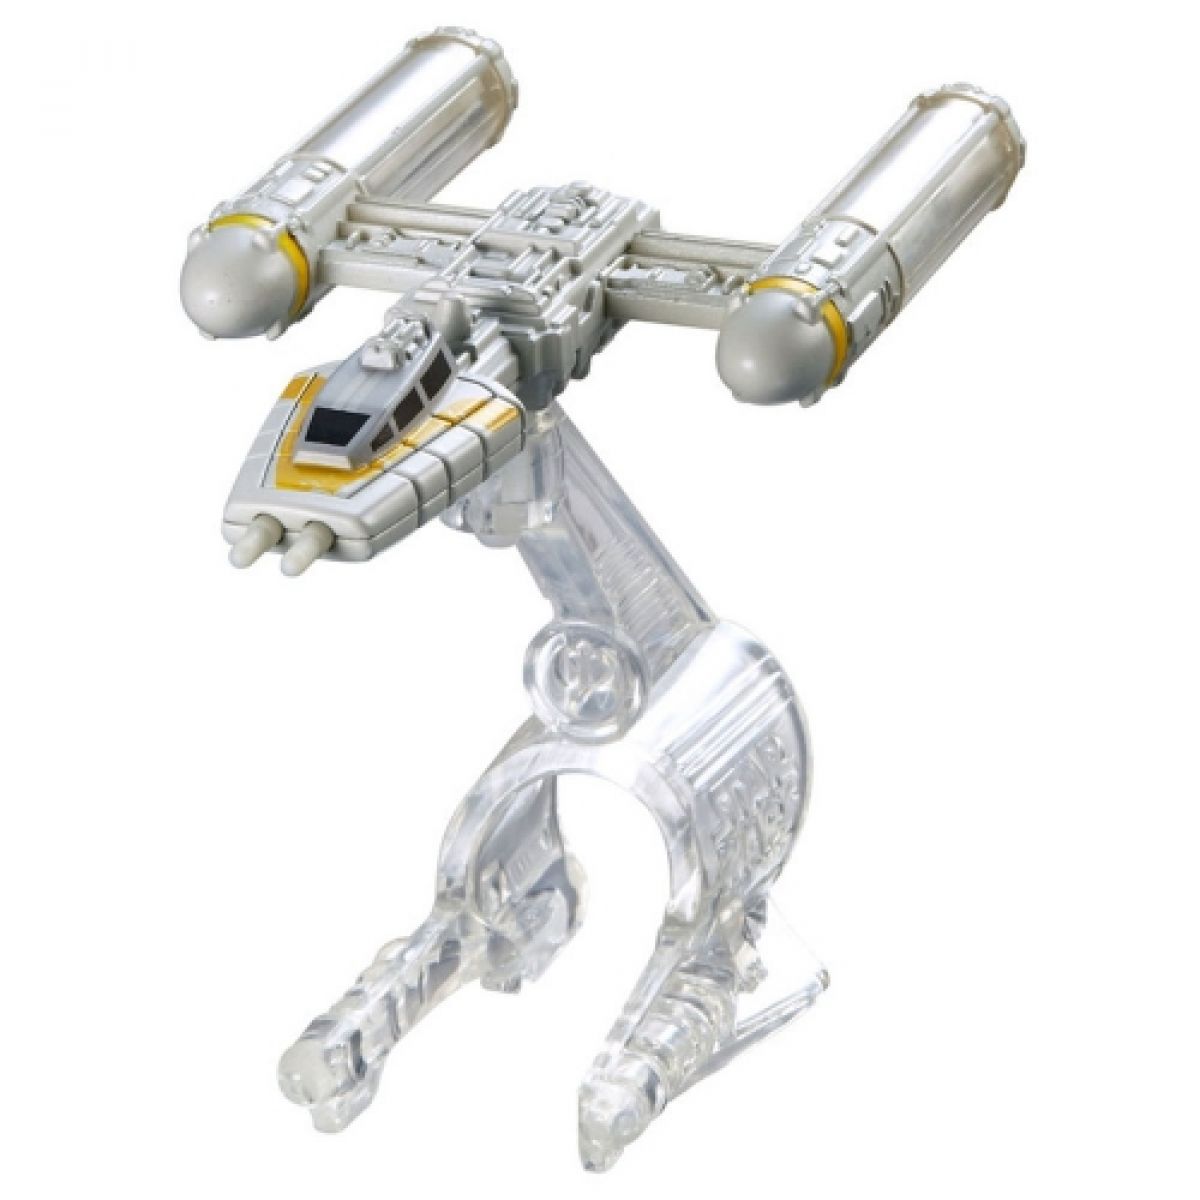 Hot Wheels Star Wars Starship 1ks - Y-Wing Fighter DXX54